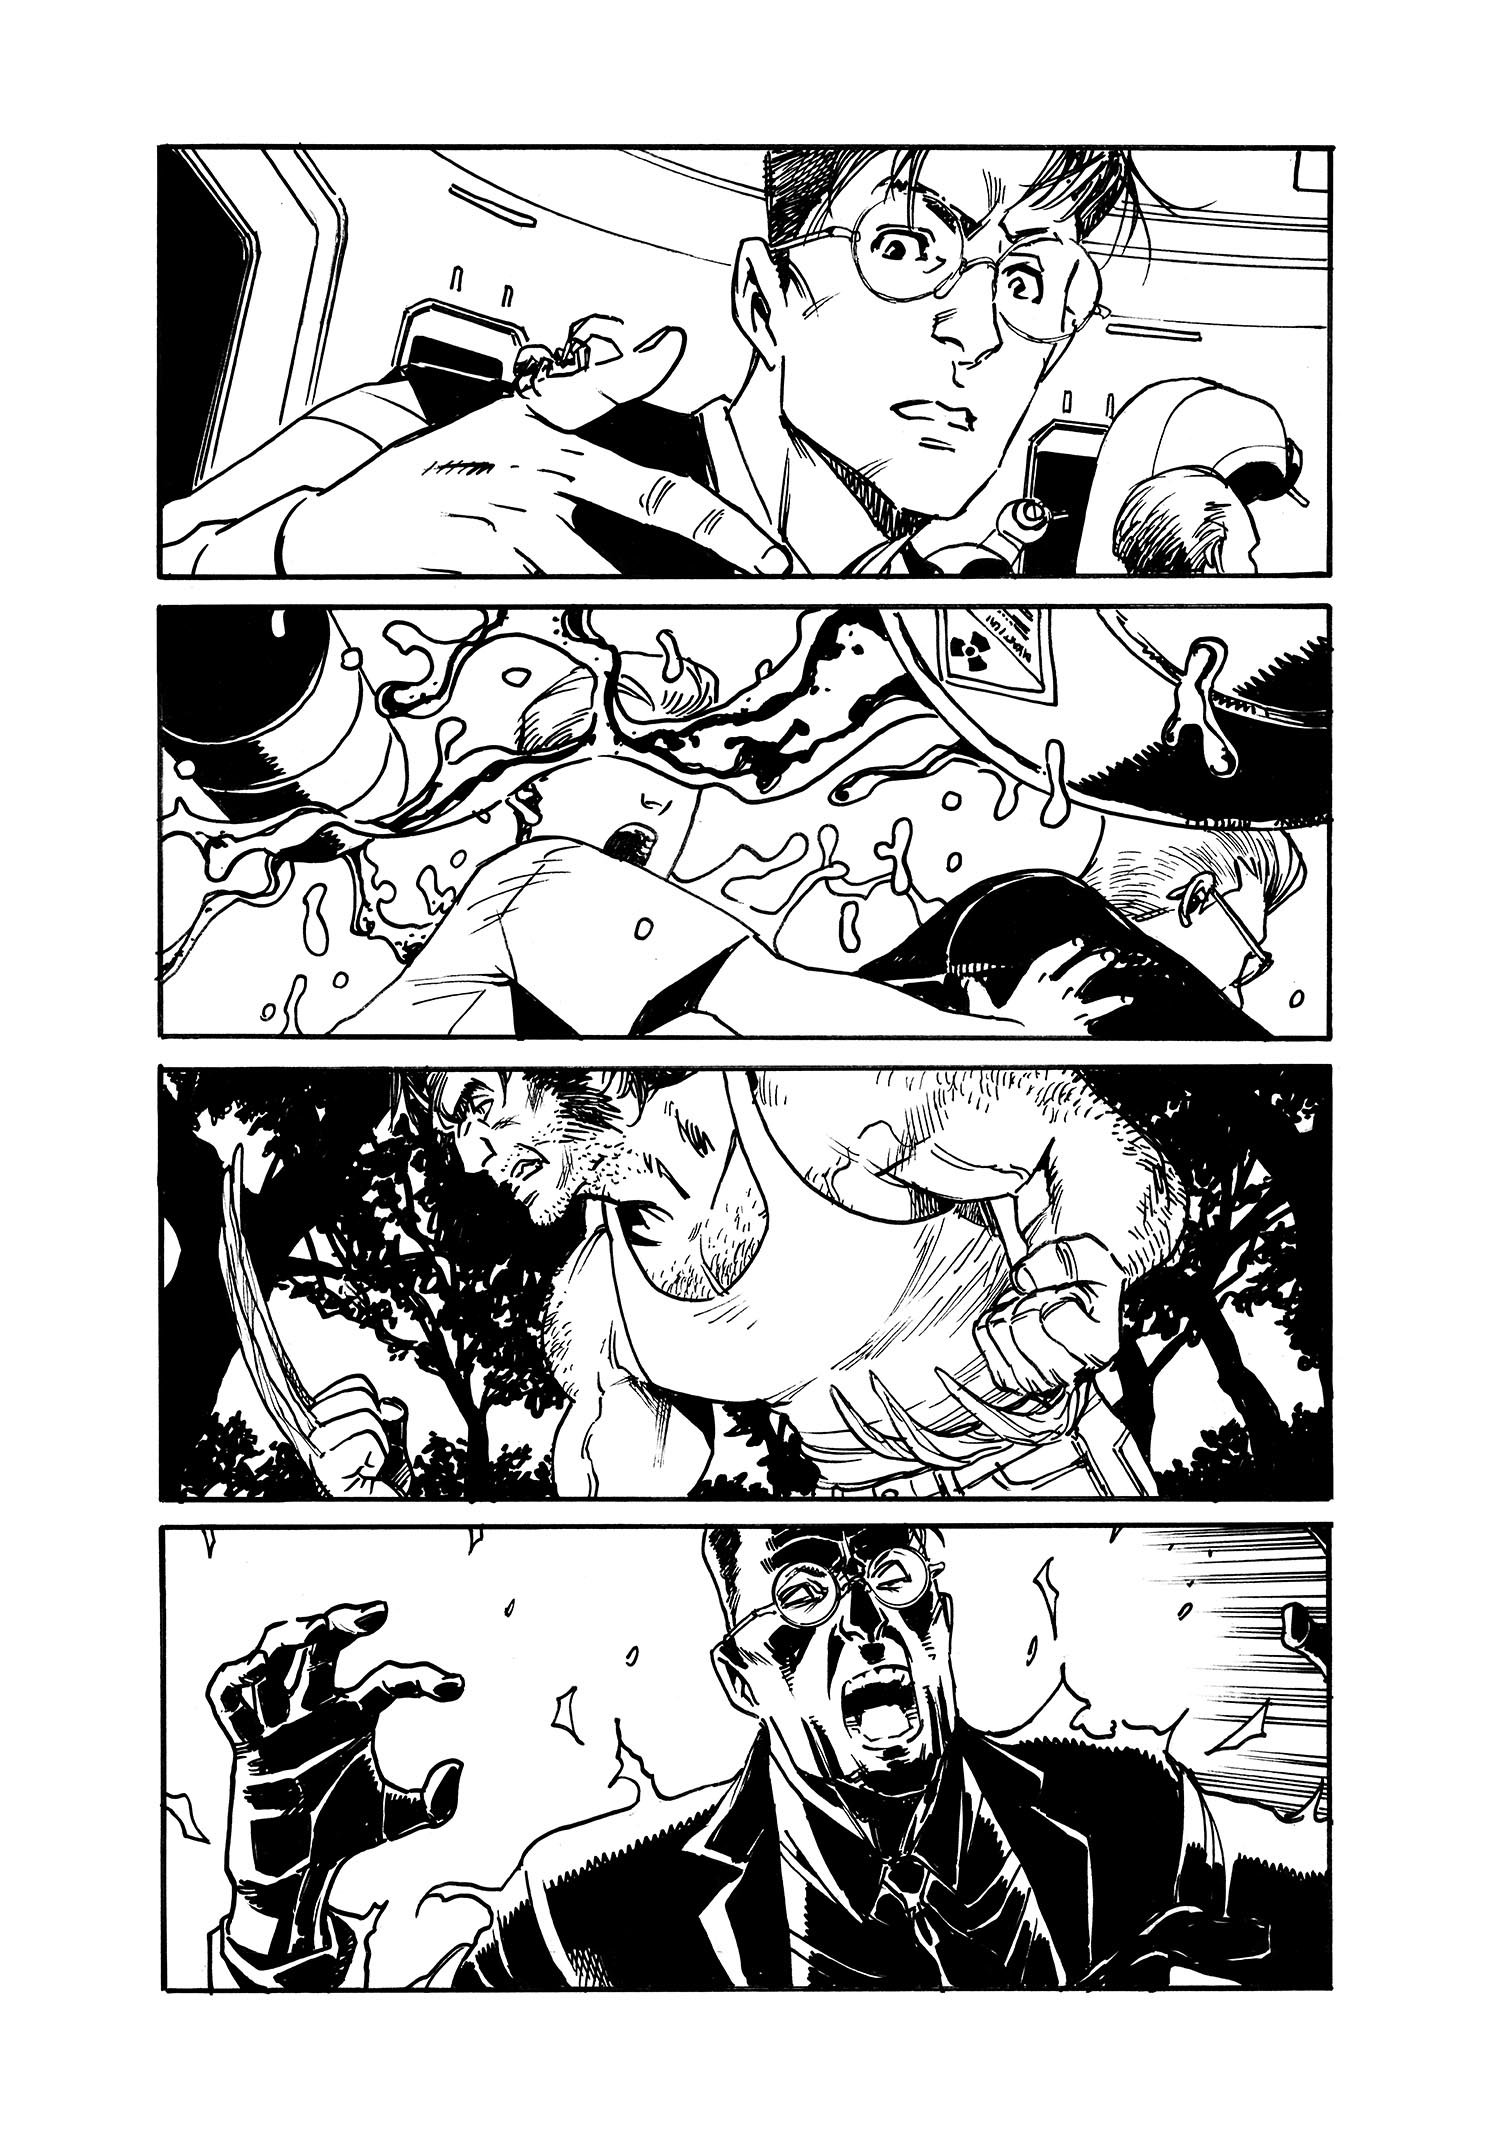 Image of She-Hulk 8 Page 4